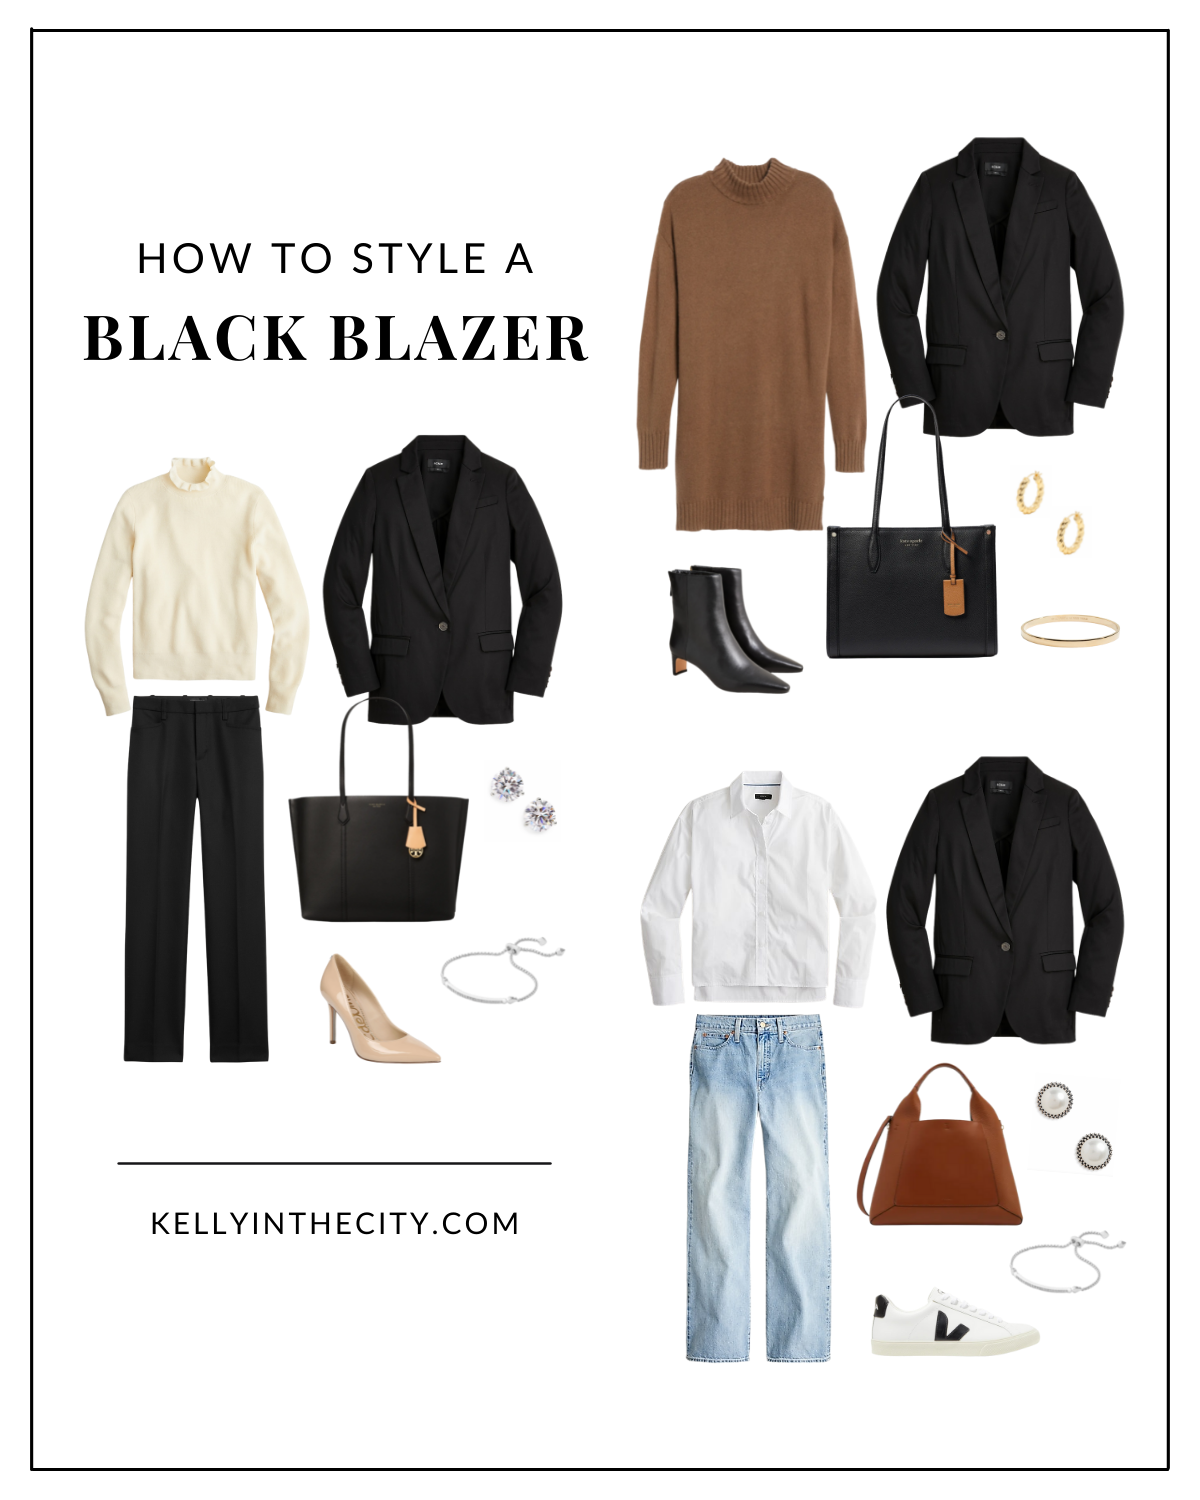 How to Style a Black Blazer 3 Ways